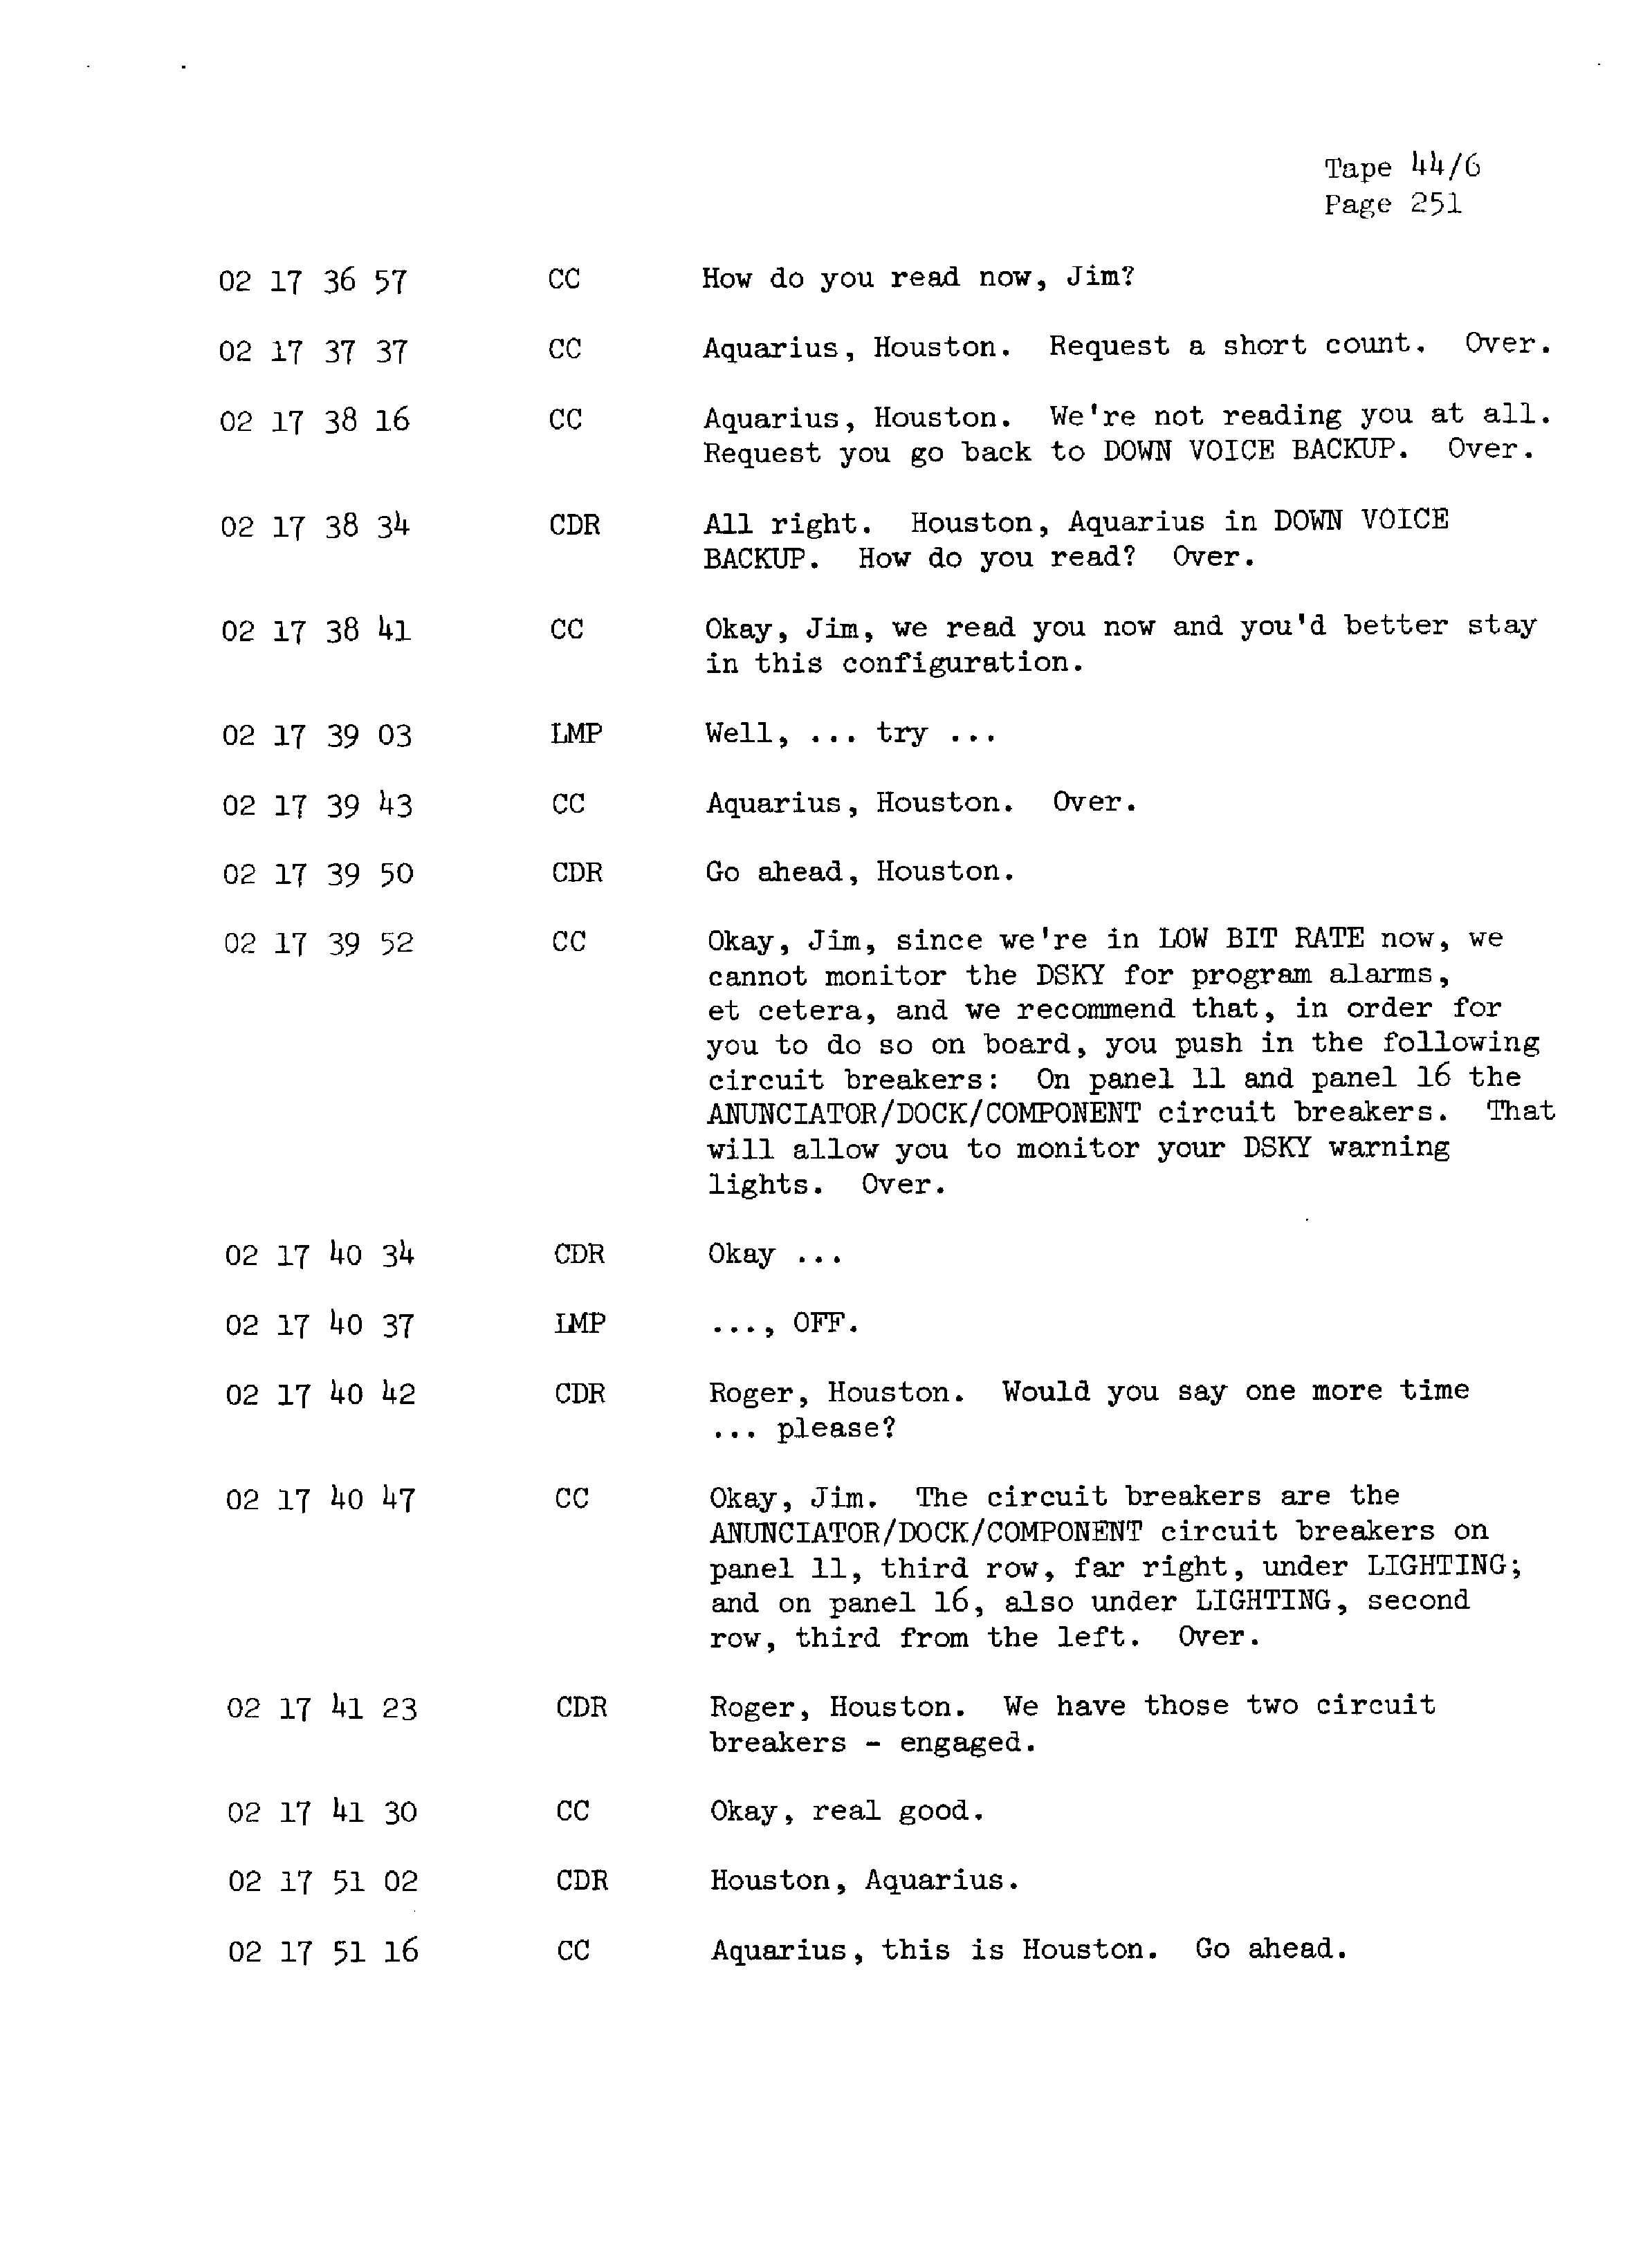 Page 258 of Apollo 13’s original transcript